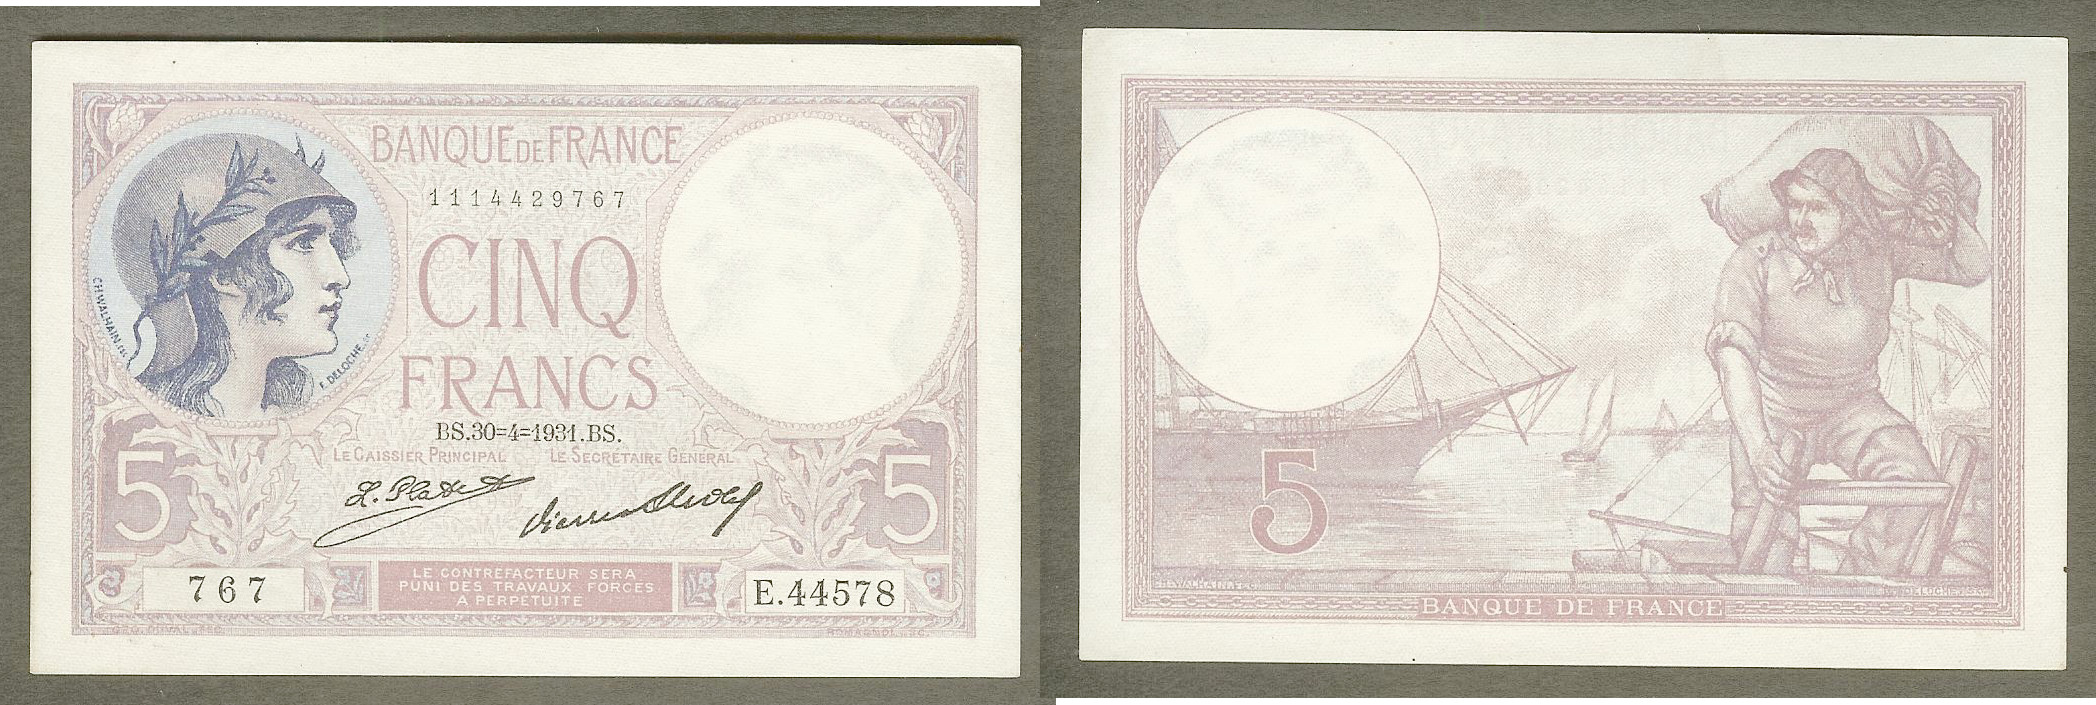 5 Francs VIOLET FRANCE 1931 SPL+